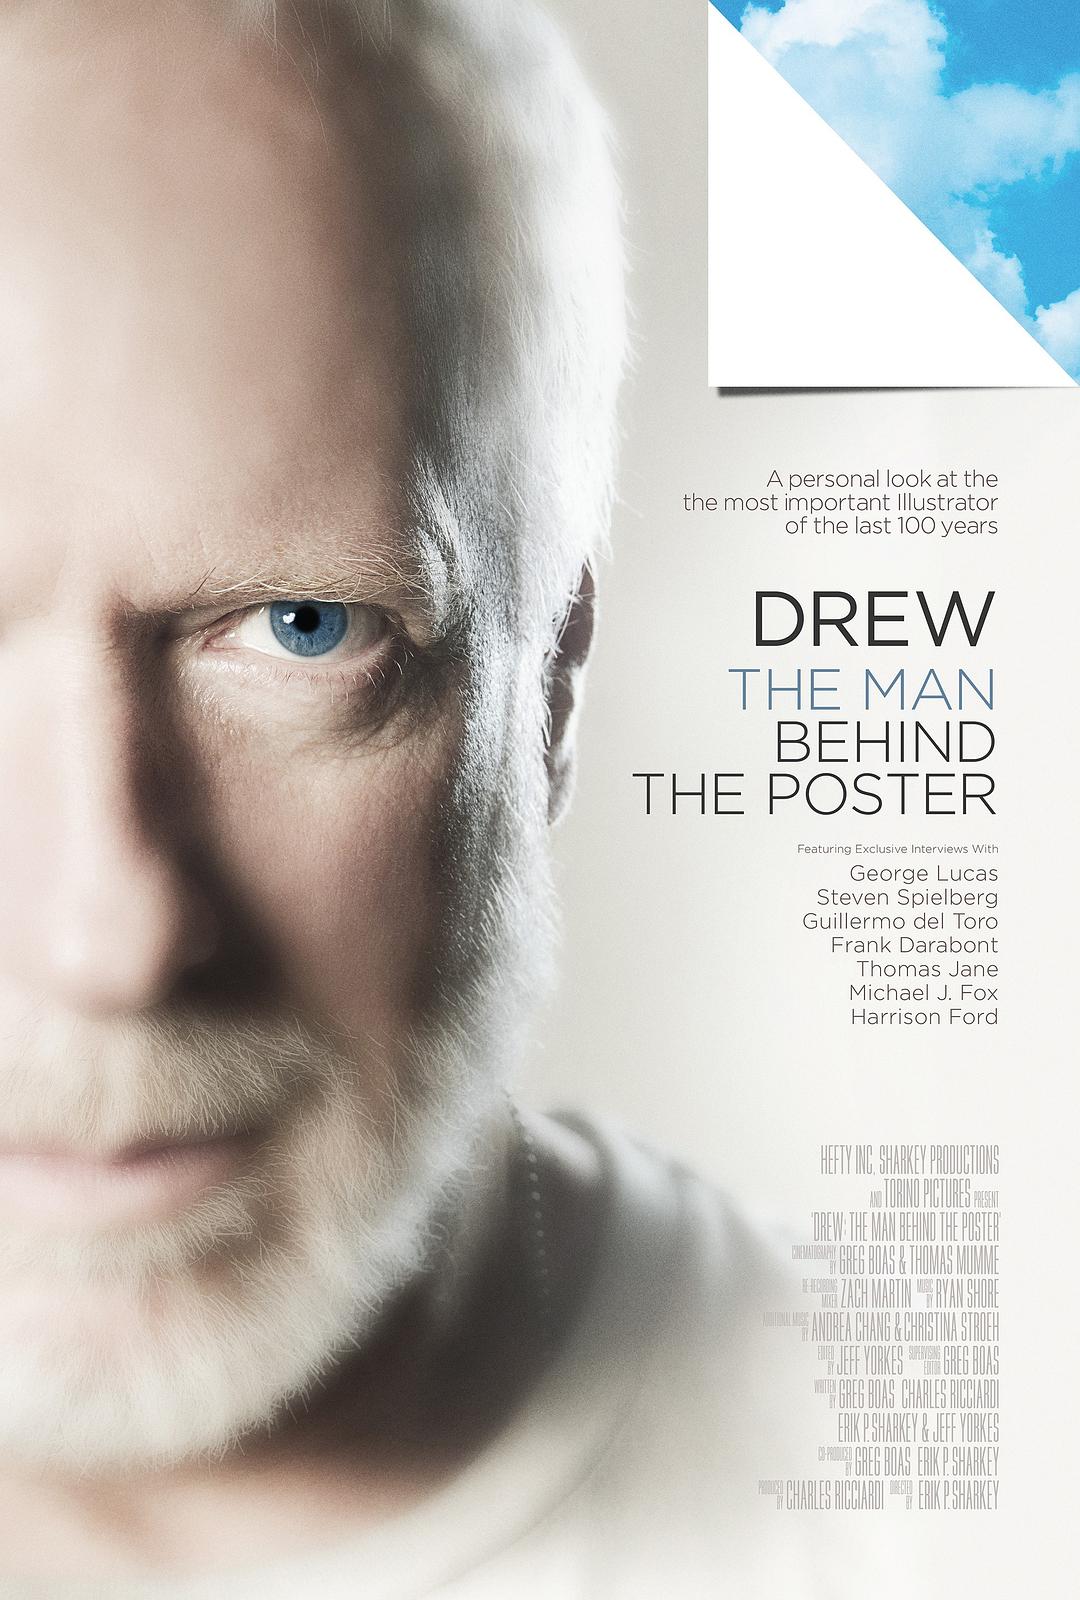 德鲁·舒赞:电影海报的幕后伟人 Drew.The.Man.Behind.The.Poster.2013.1080p.AMZN.WEBRip.DDP5.1.x264-KAIZEN 6.61GB-1.png